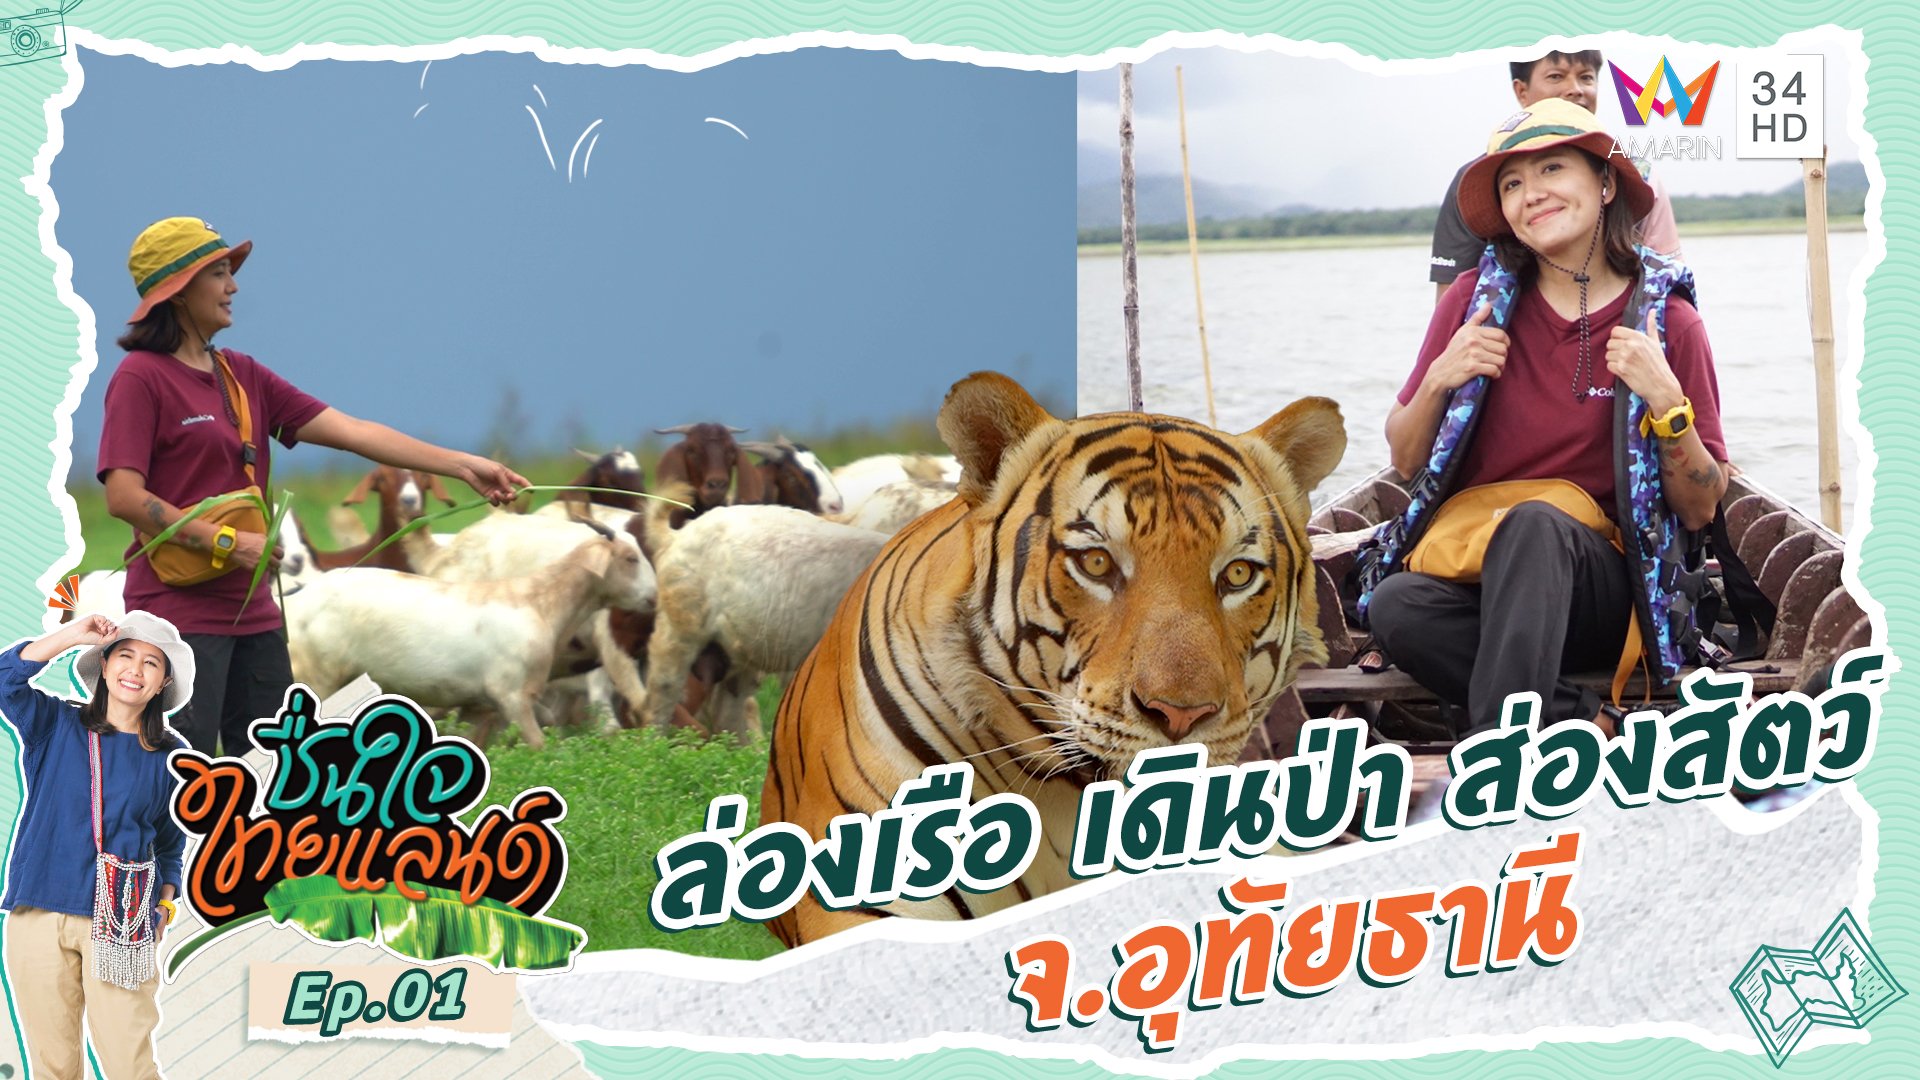 ชื่นใจไทยแลนด์ | EP.1 ล่องเรือ เดินป่า ส่องสัตว์ จ.อุทัยธานี  | 4 พ.ย. 66 | AMARIN TVHD34